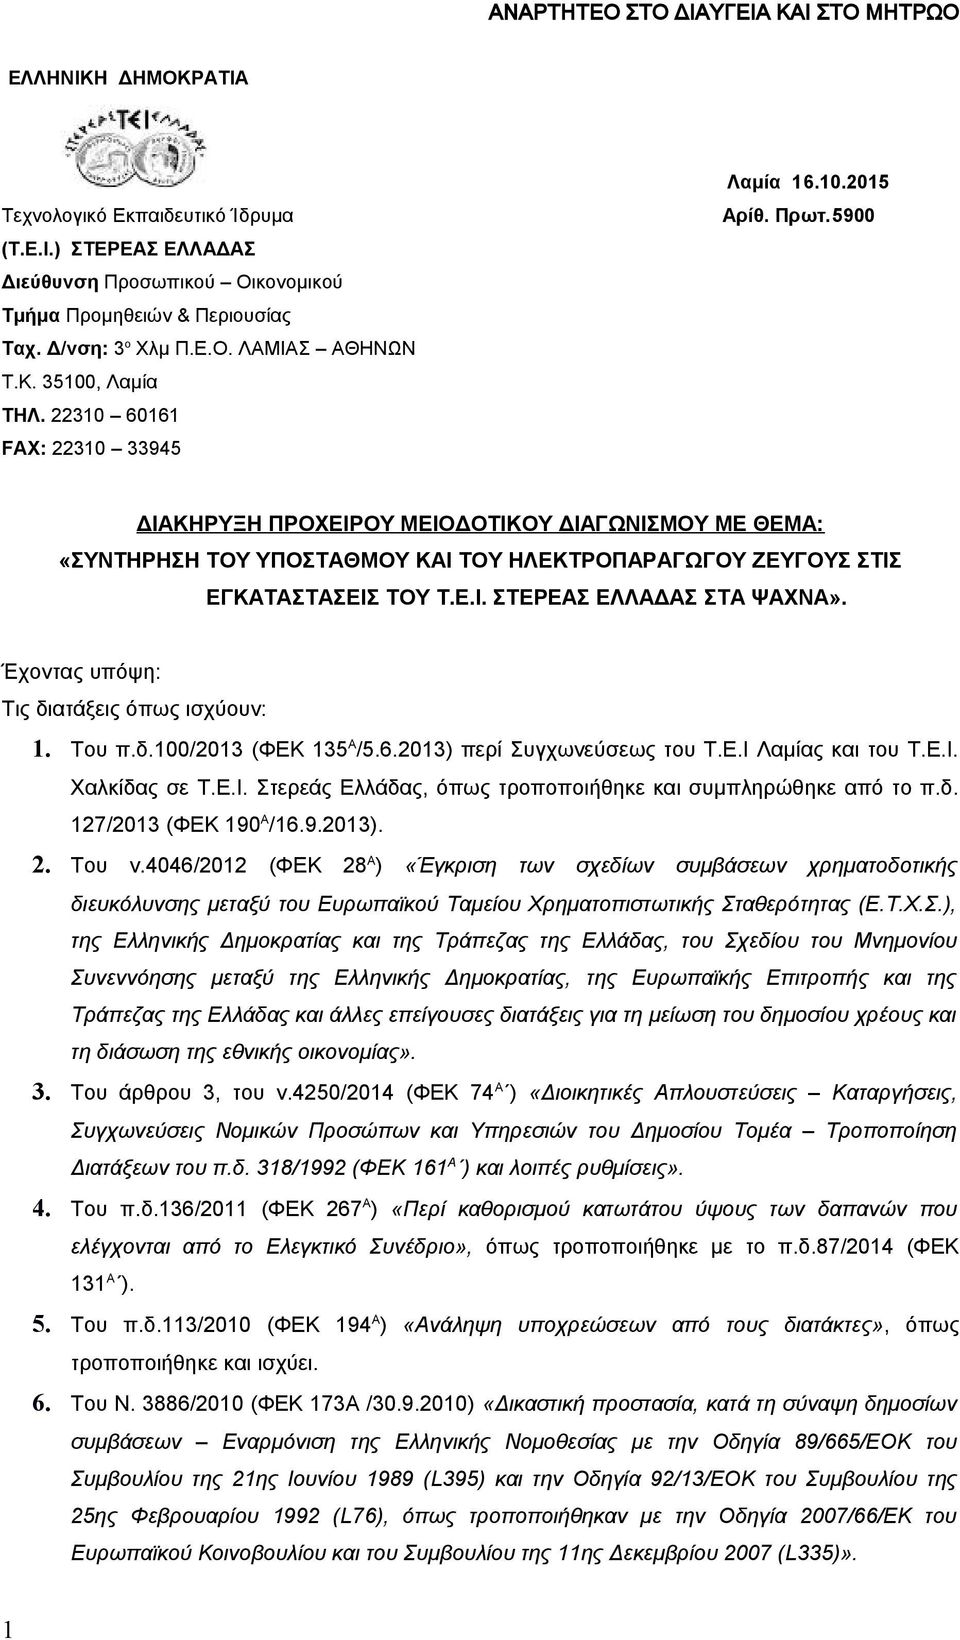 Έχοντας υπόψη: Τις διατάξεις όπως ισχύουν: 1. Του π.δ.100/2013 (ΦΕΚ 135 Α /5.6.2013) περί Συγχωνεύσεως του Τ.Ε.Ι Λαμίας και του Τ.Ε.Ι. Χαλκίδας σε Τ.Ε.Ι. Στερεάς Ελλάδας, όπως τροποποιήθηκε και συμπληρώθηκε από το π.